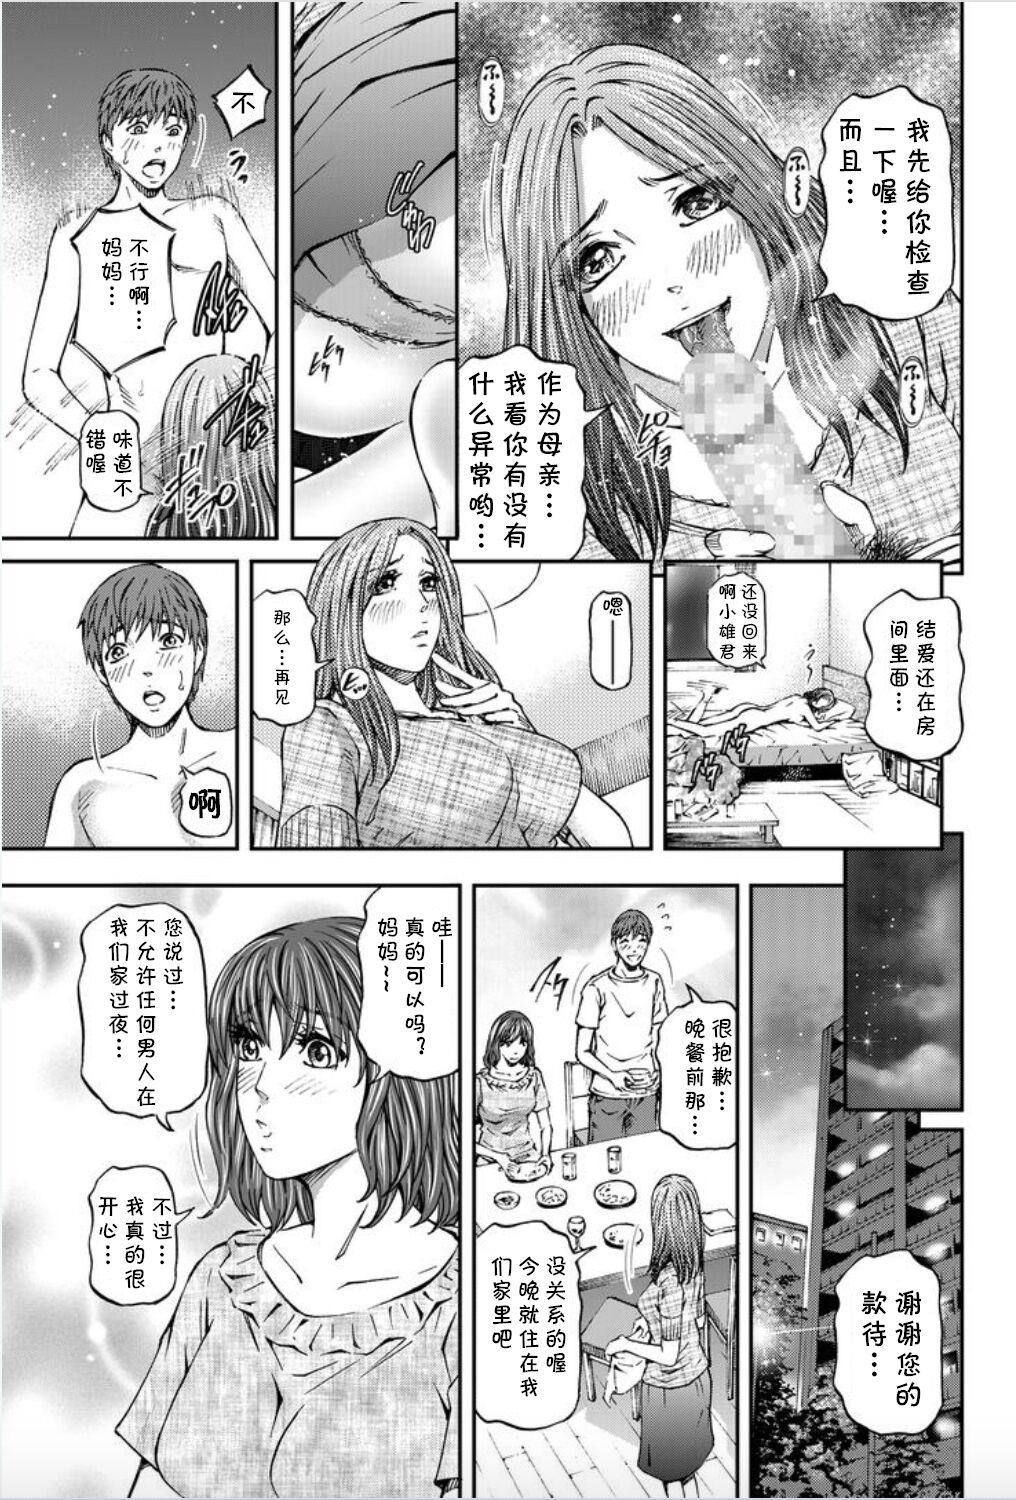 Stretching Onna-tachi ga Iku Toki... Ero Drama Vol. 8 Datte, Kanojo no Haha ga... Oral - Page 7